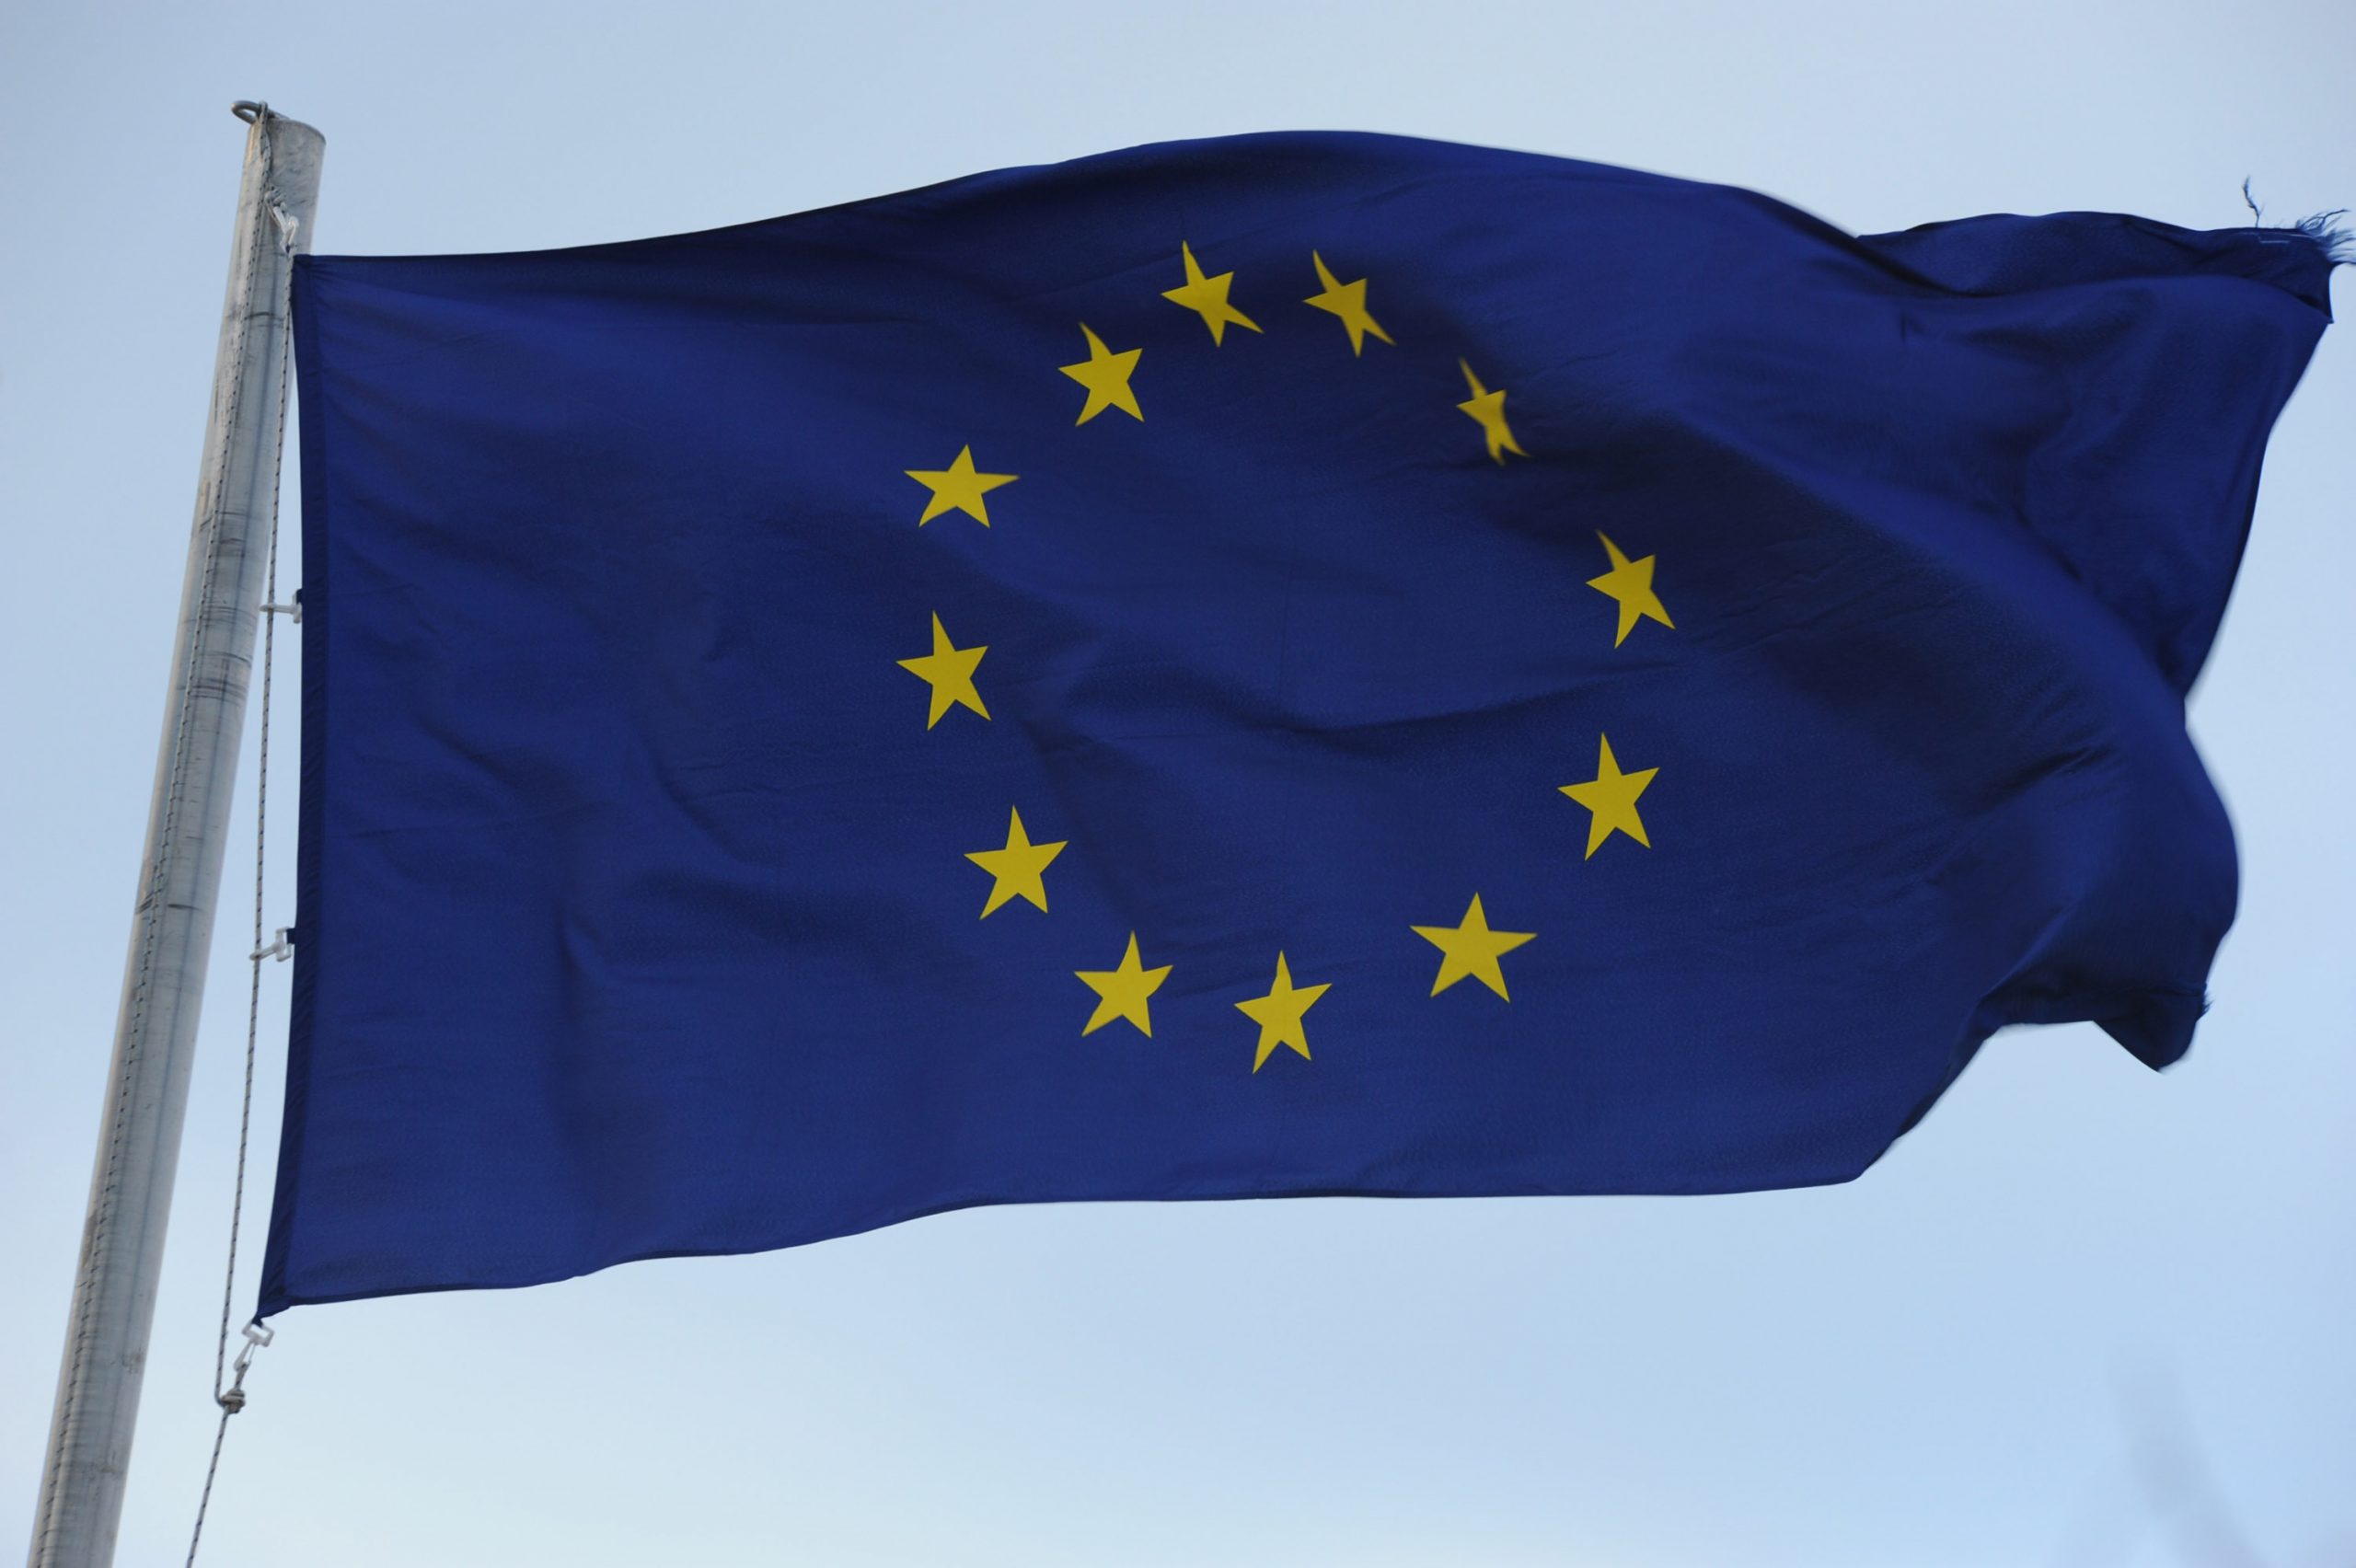 19.01.2015., Sibenik - Zastava Europske unije. 
Photo: Hrvoje Jelavic/PIXSELL